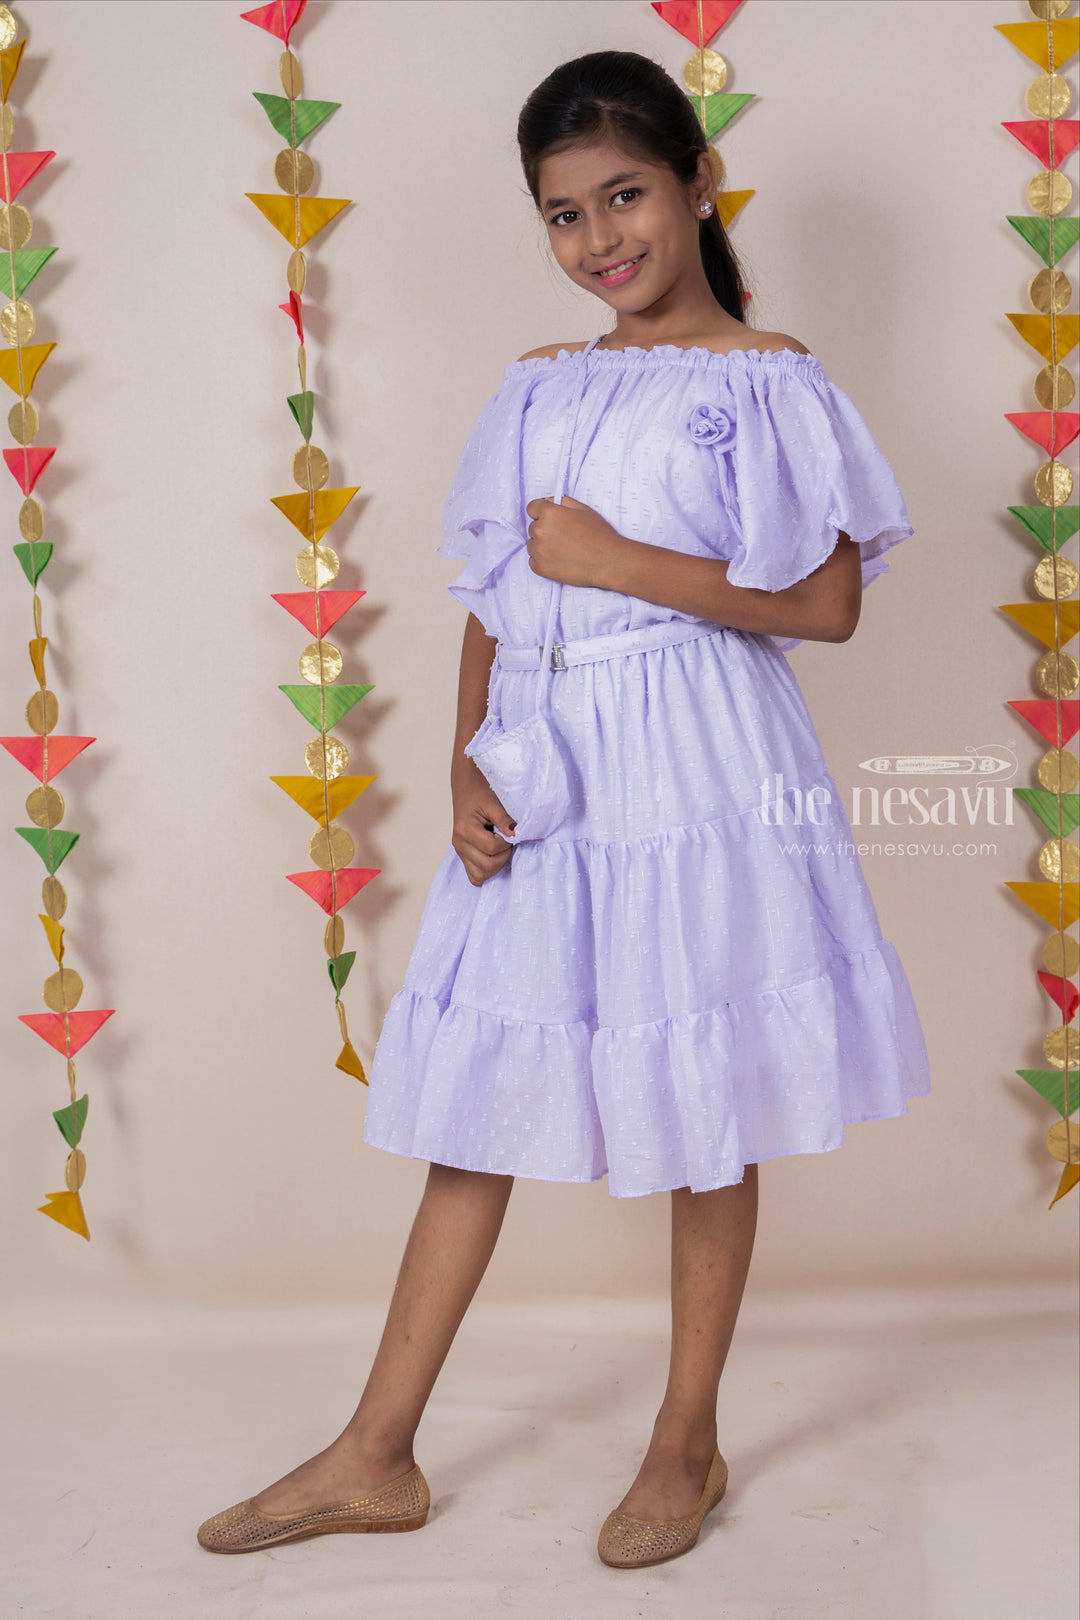 The Nesavu Frocks & Dresses Lavendar Off-Shoulder Designed Soft Cotton Frock For Baby Girls With Matching Bag psr silks Nesavu 22 (4Y) / lavendar GFC913B